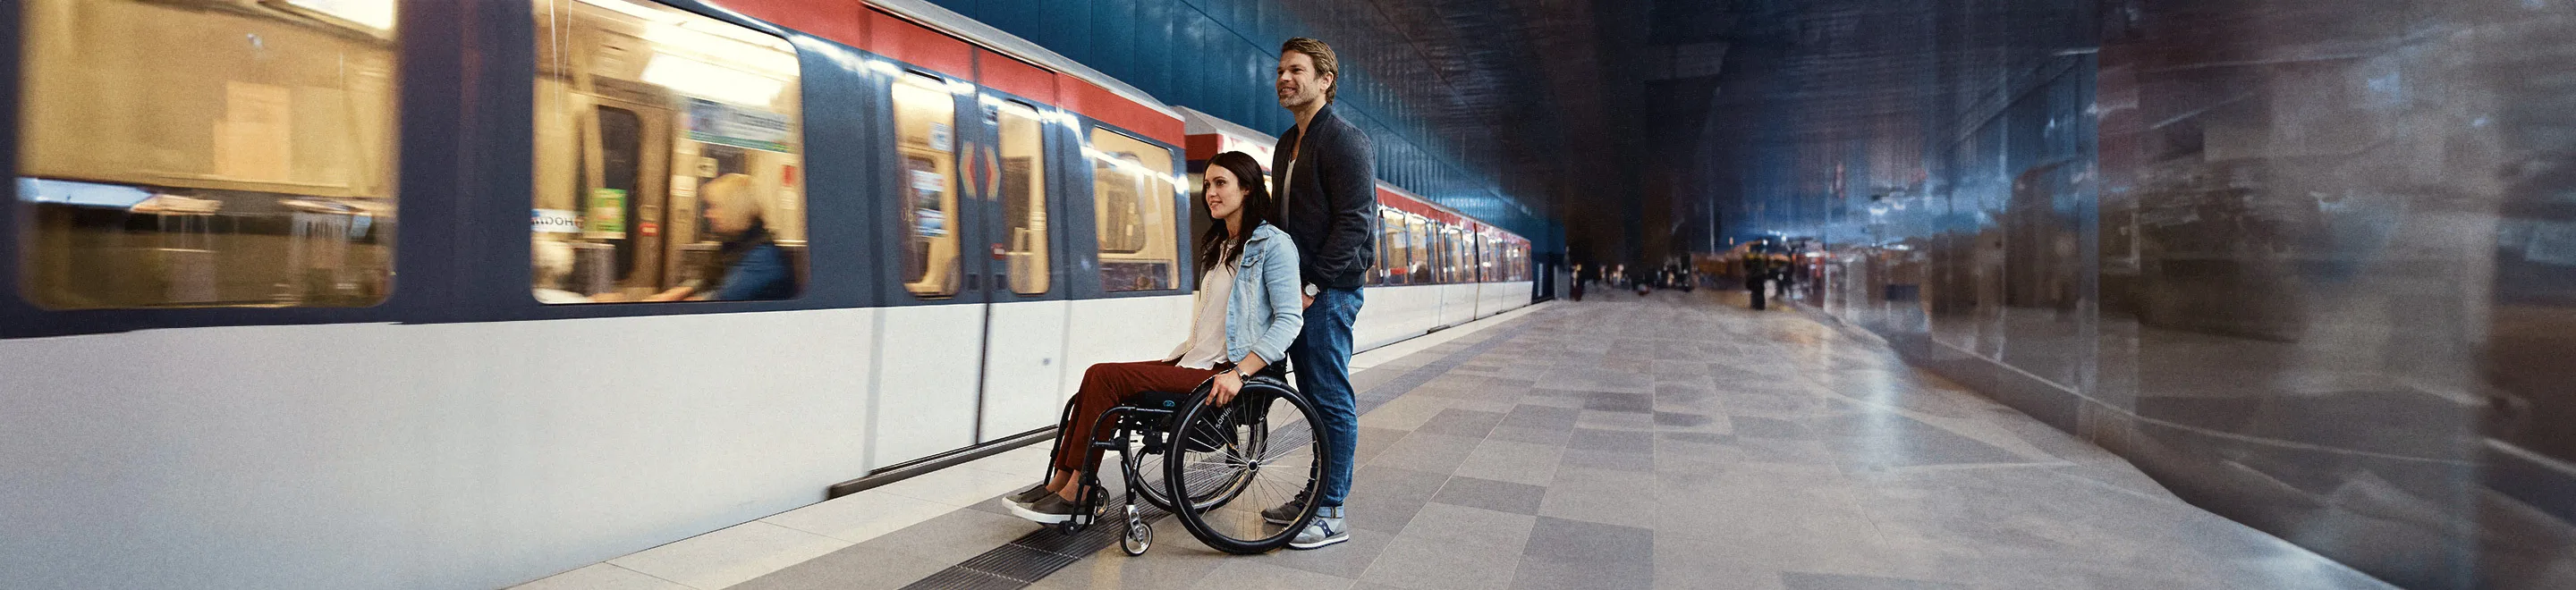 Eine Frau im Rollstuhl und ein Mann hinter ihr stehen vor einer einfahrenden U-Bahn.